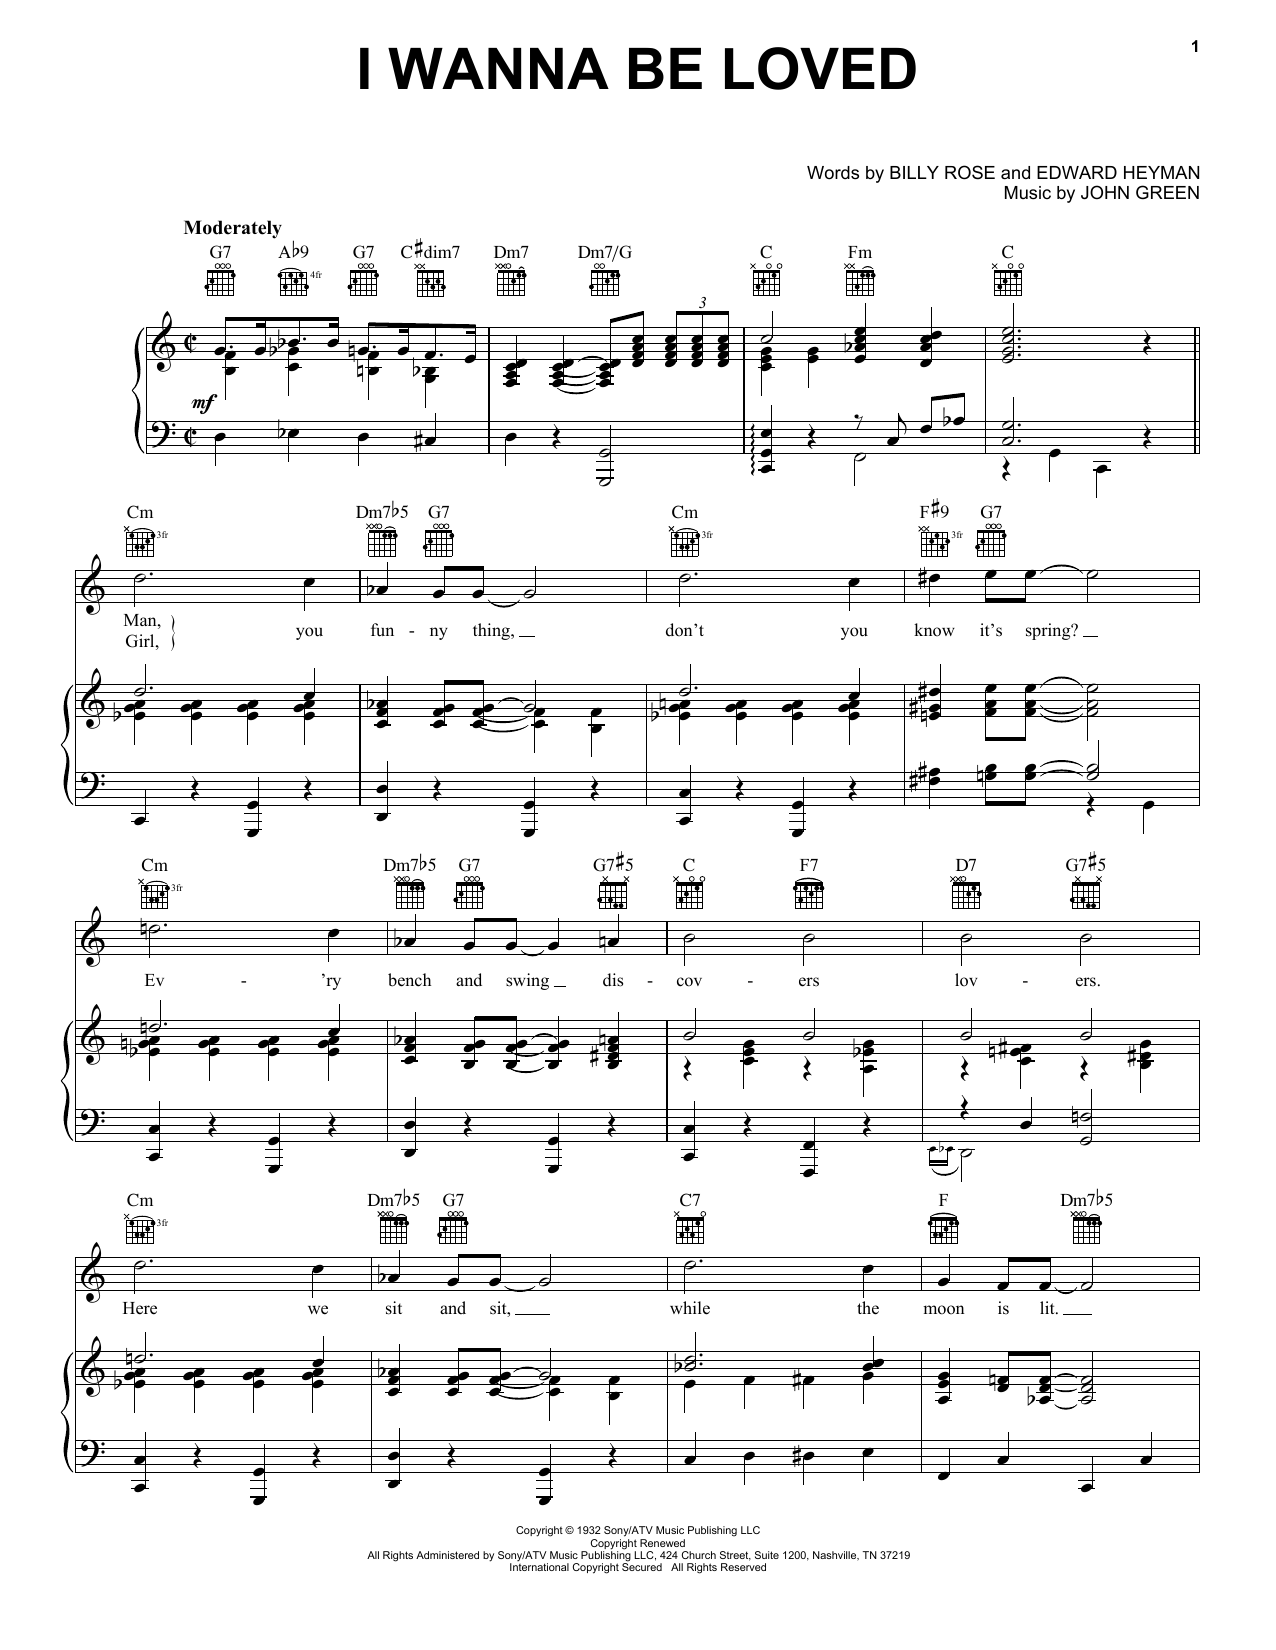 Dinah Washington I Wanna Be Loved sheet music notes and chords. Download Printable PDF.